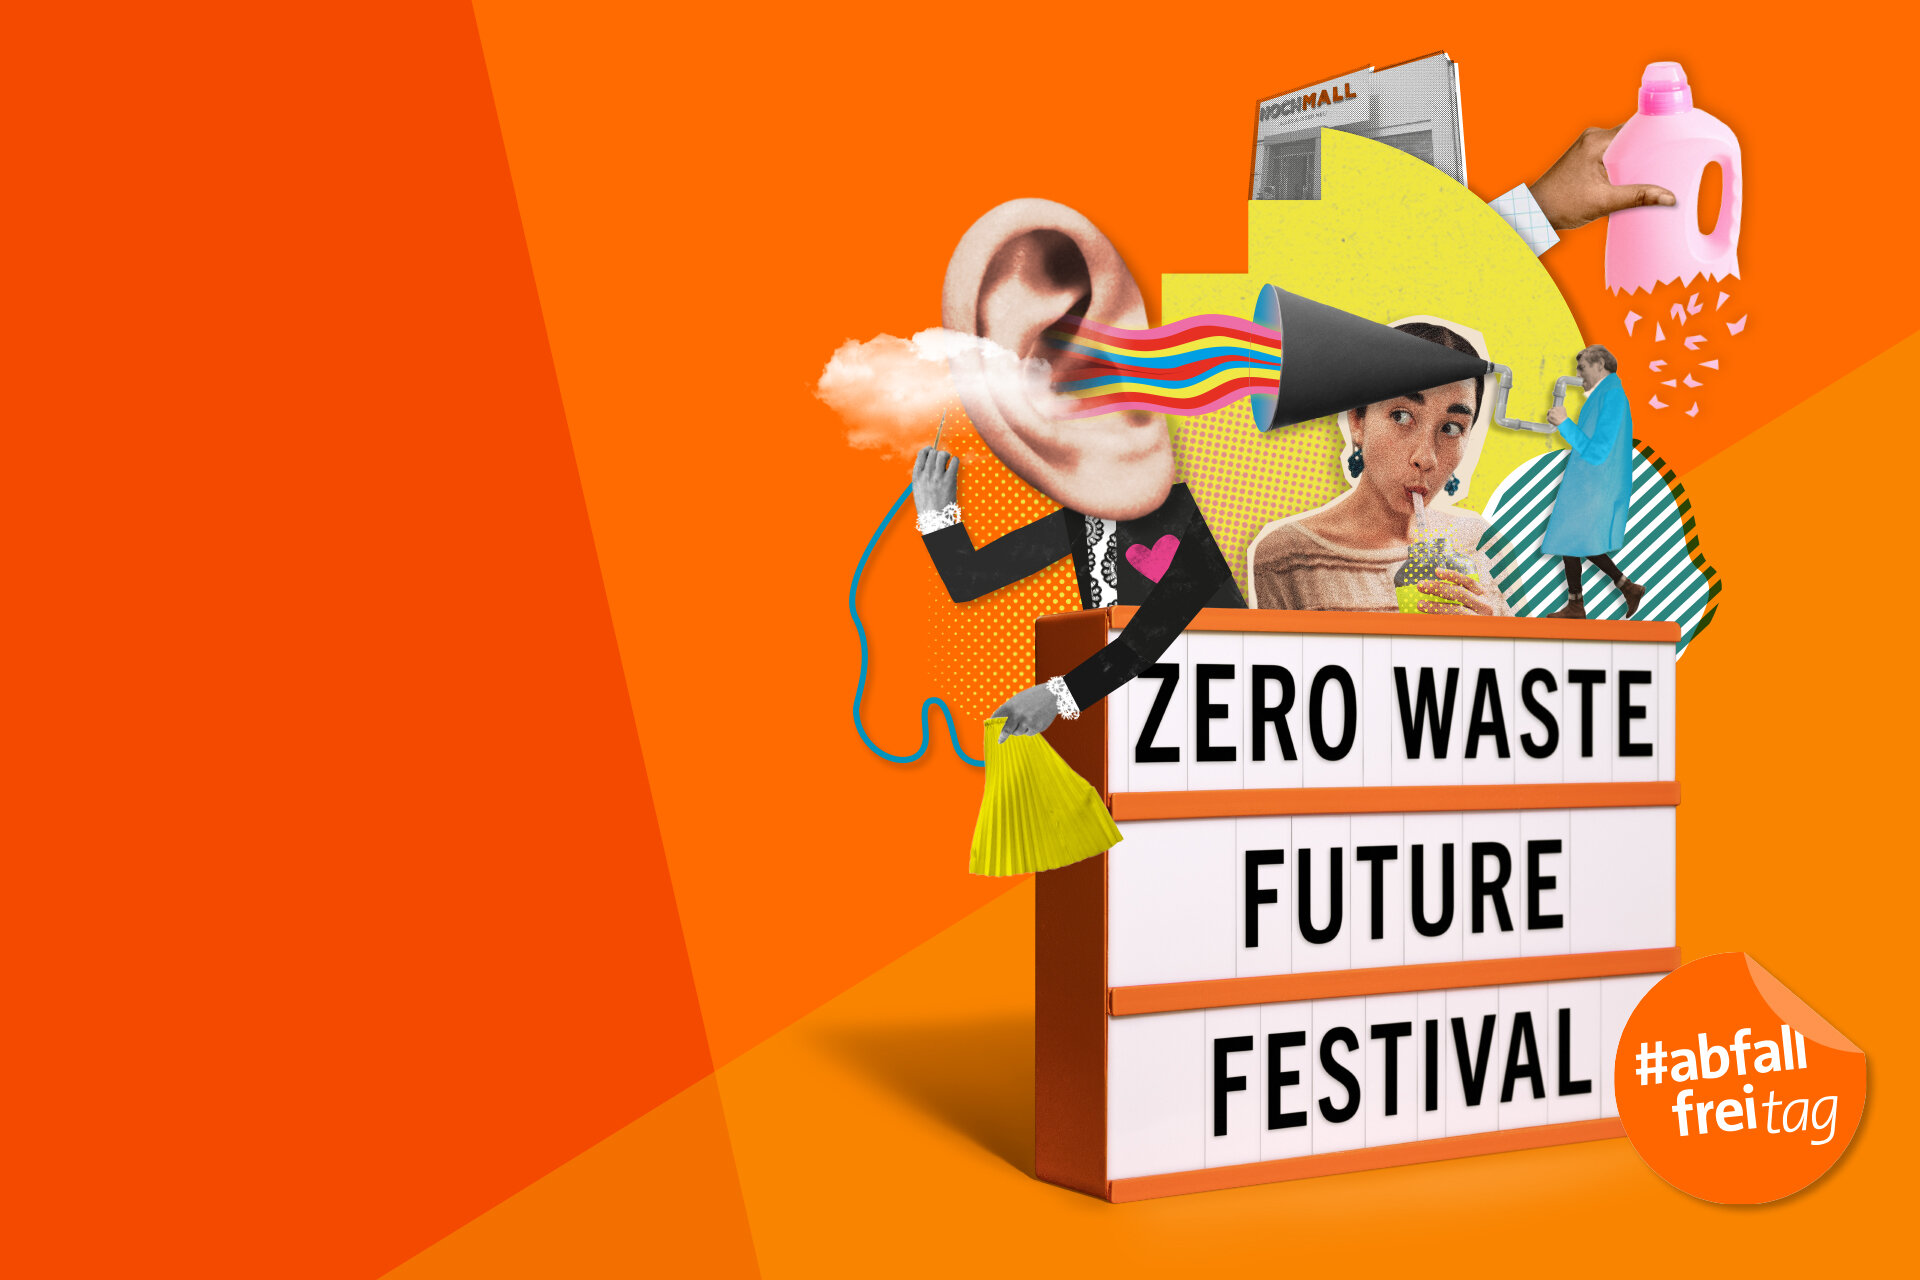 Lustige, bunte Bildkomposition zum Zero Waste Future Festival mit Abfallfreitags-Störer und umfunktionierten Gegenständen..